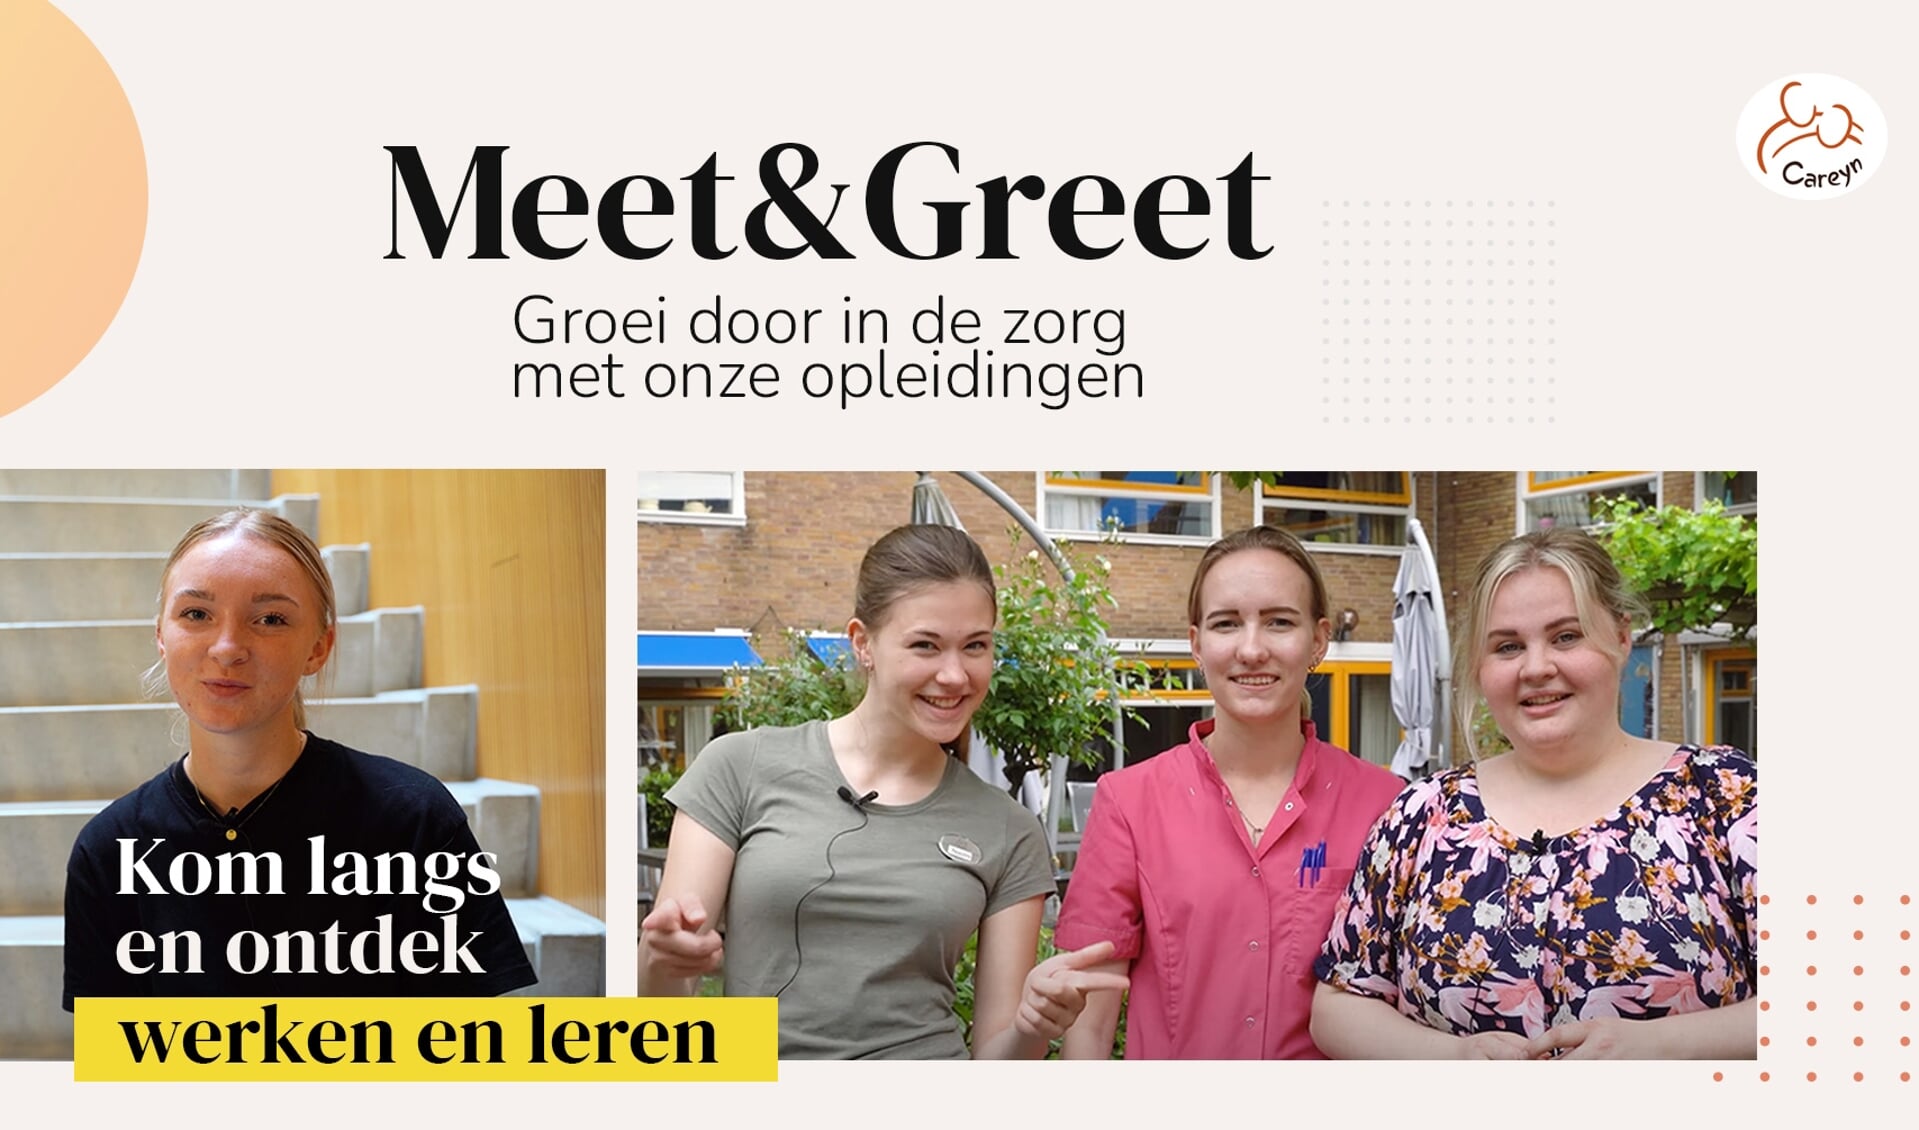 Meet & greet van Careyn in Vlaardingen.